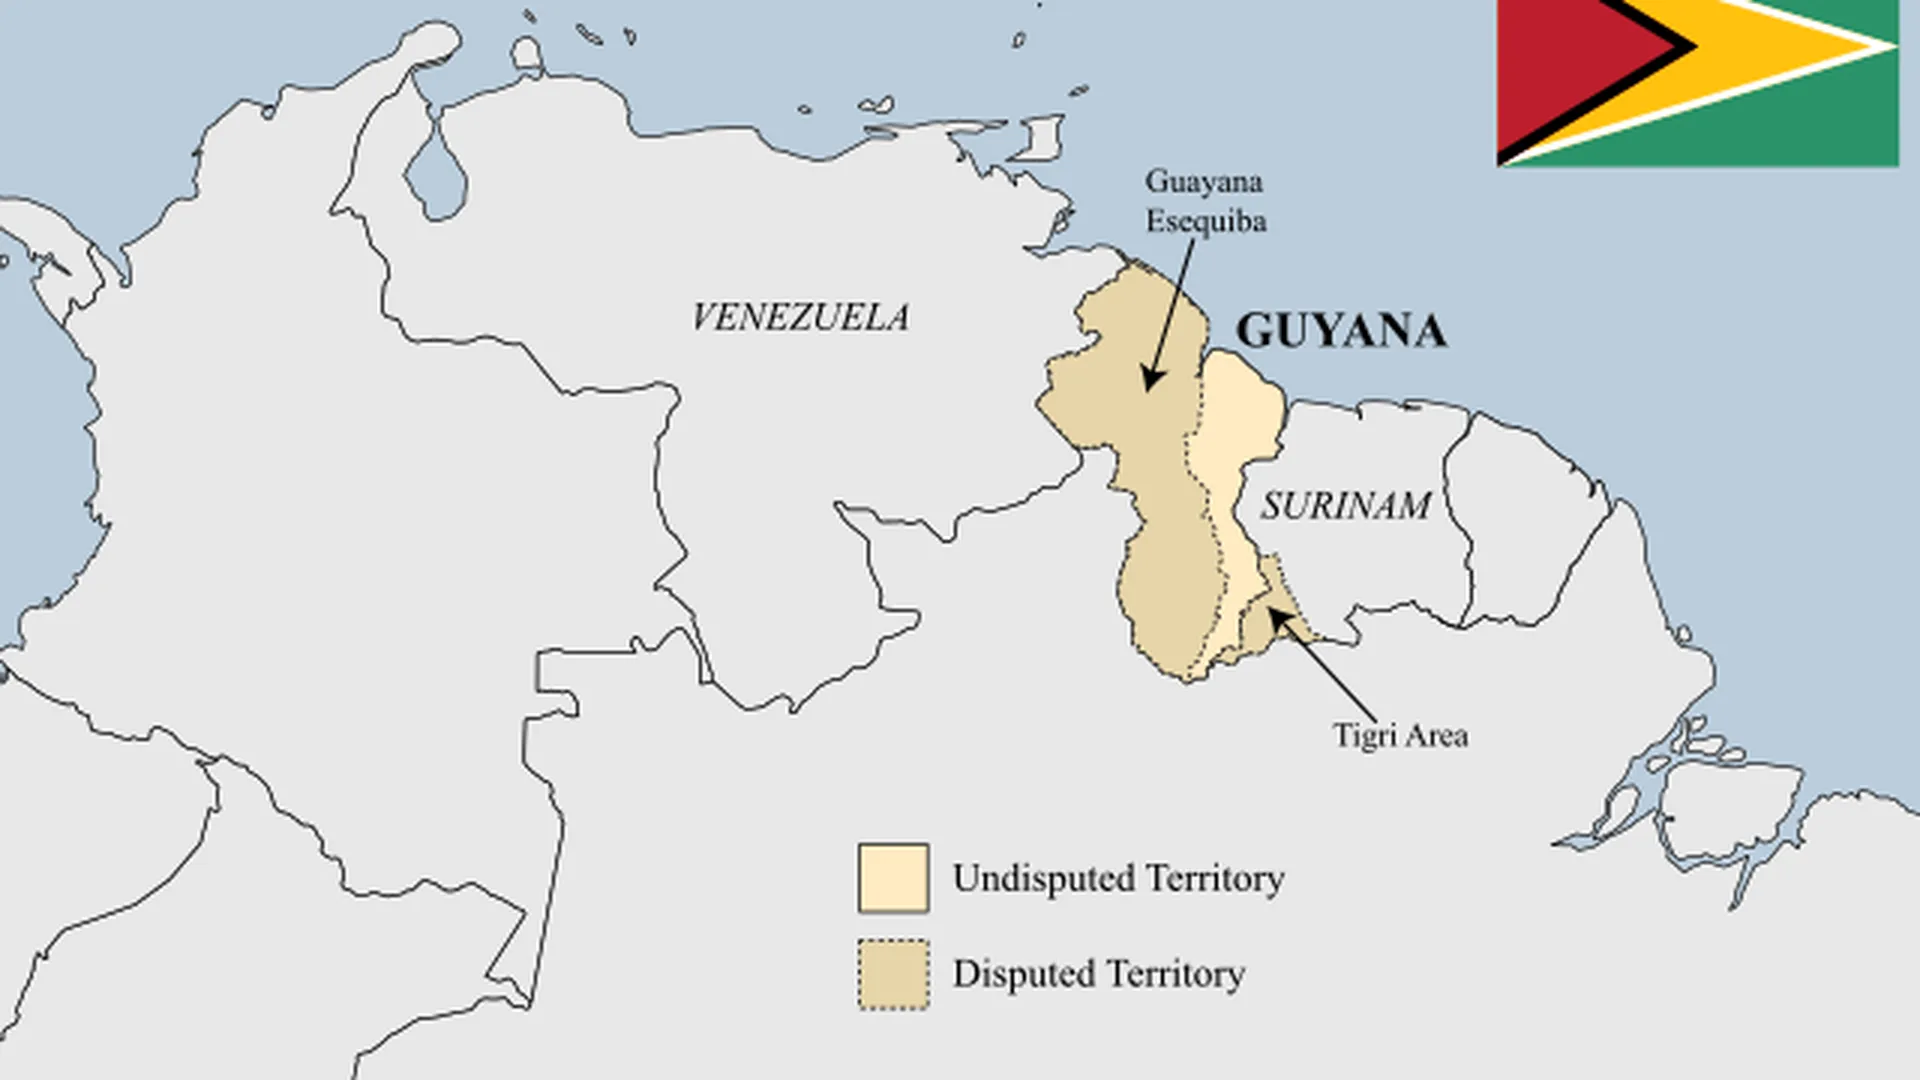 Регион Эссекибо на карте (отмечен темно-бежевым цветом и стрелкой). Справа от него — территория Гайаны, слева — Венесуэла